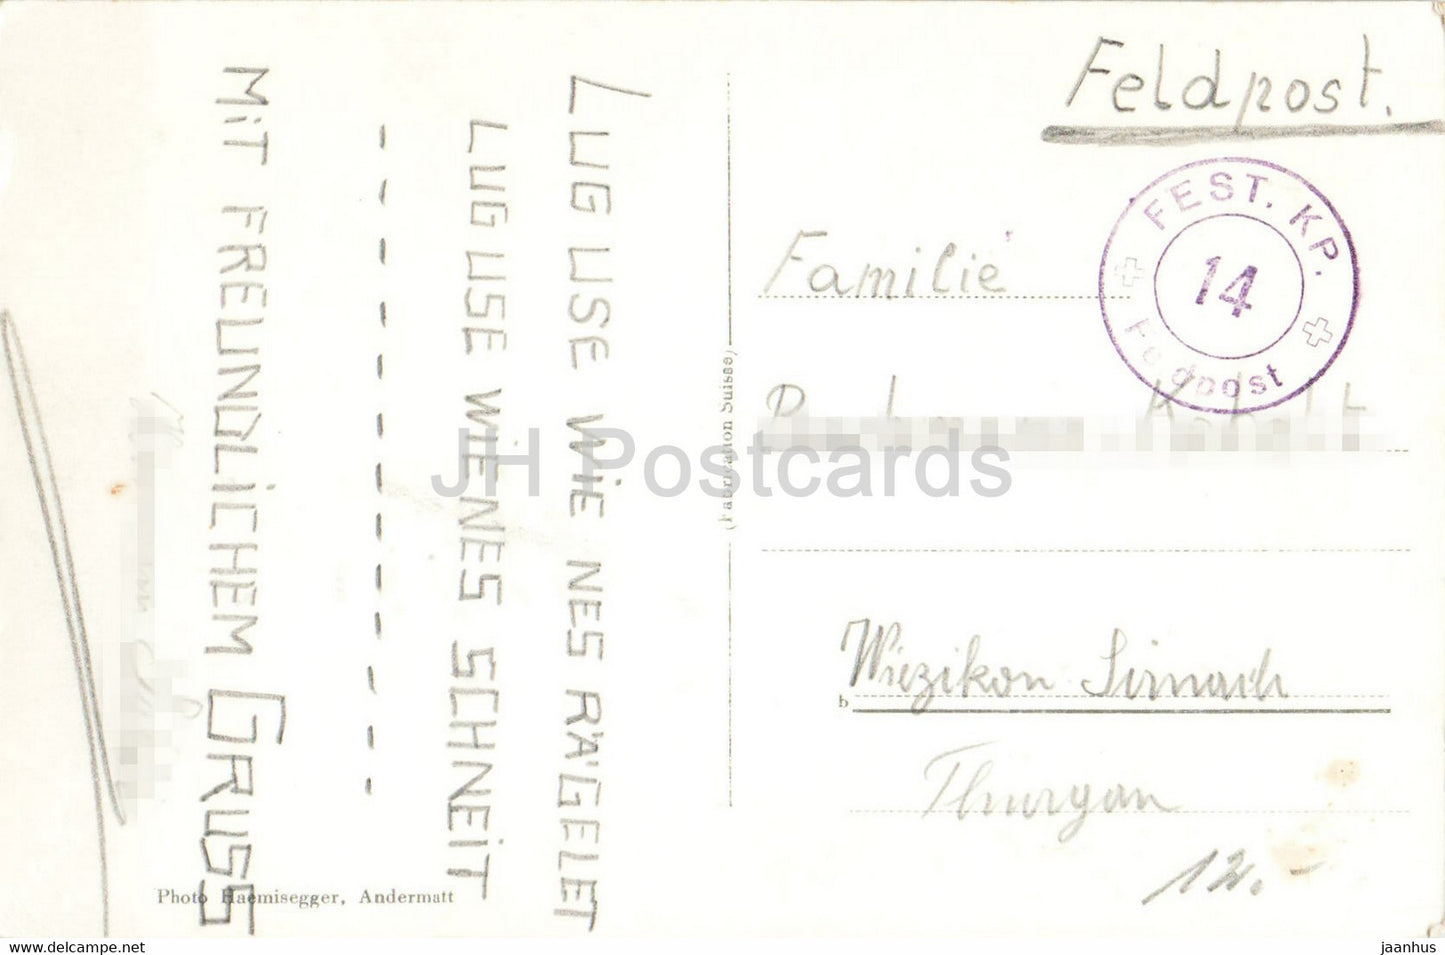 Andermatt gegen Urnerloch - 1102 - Feldpost - Militärpost - alte Postkarte - Schweiz - gebraucht